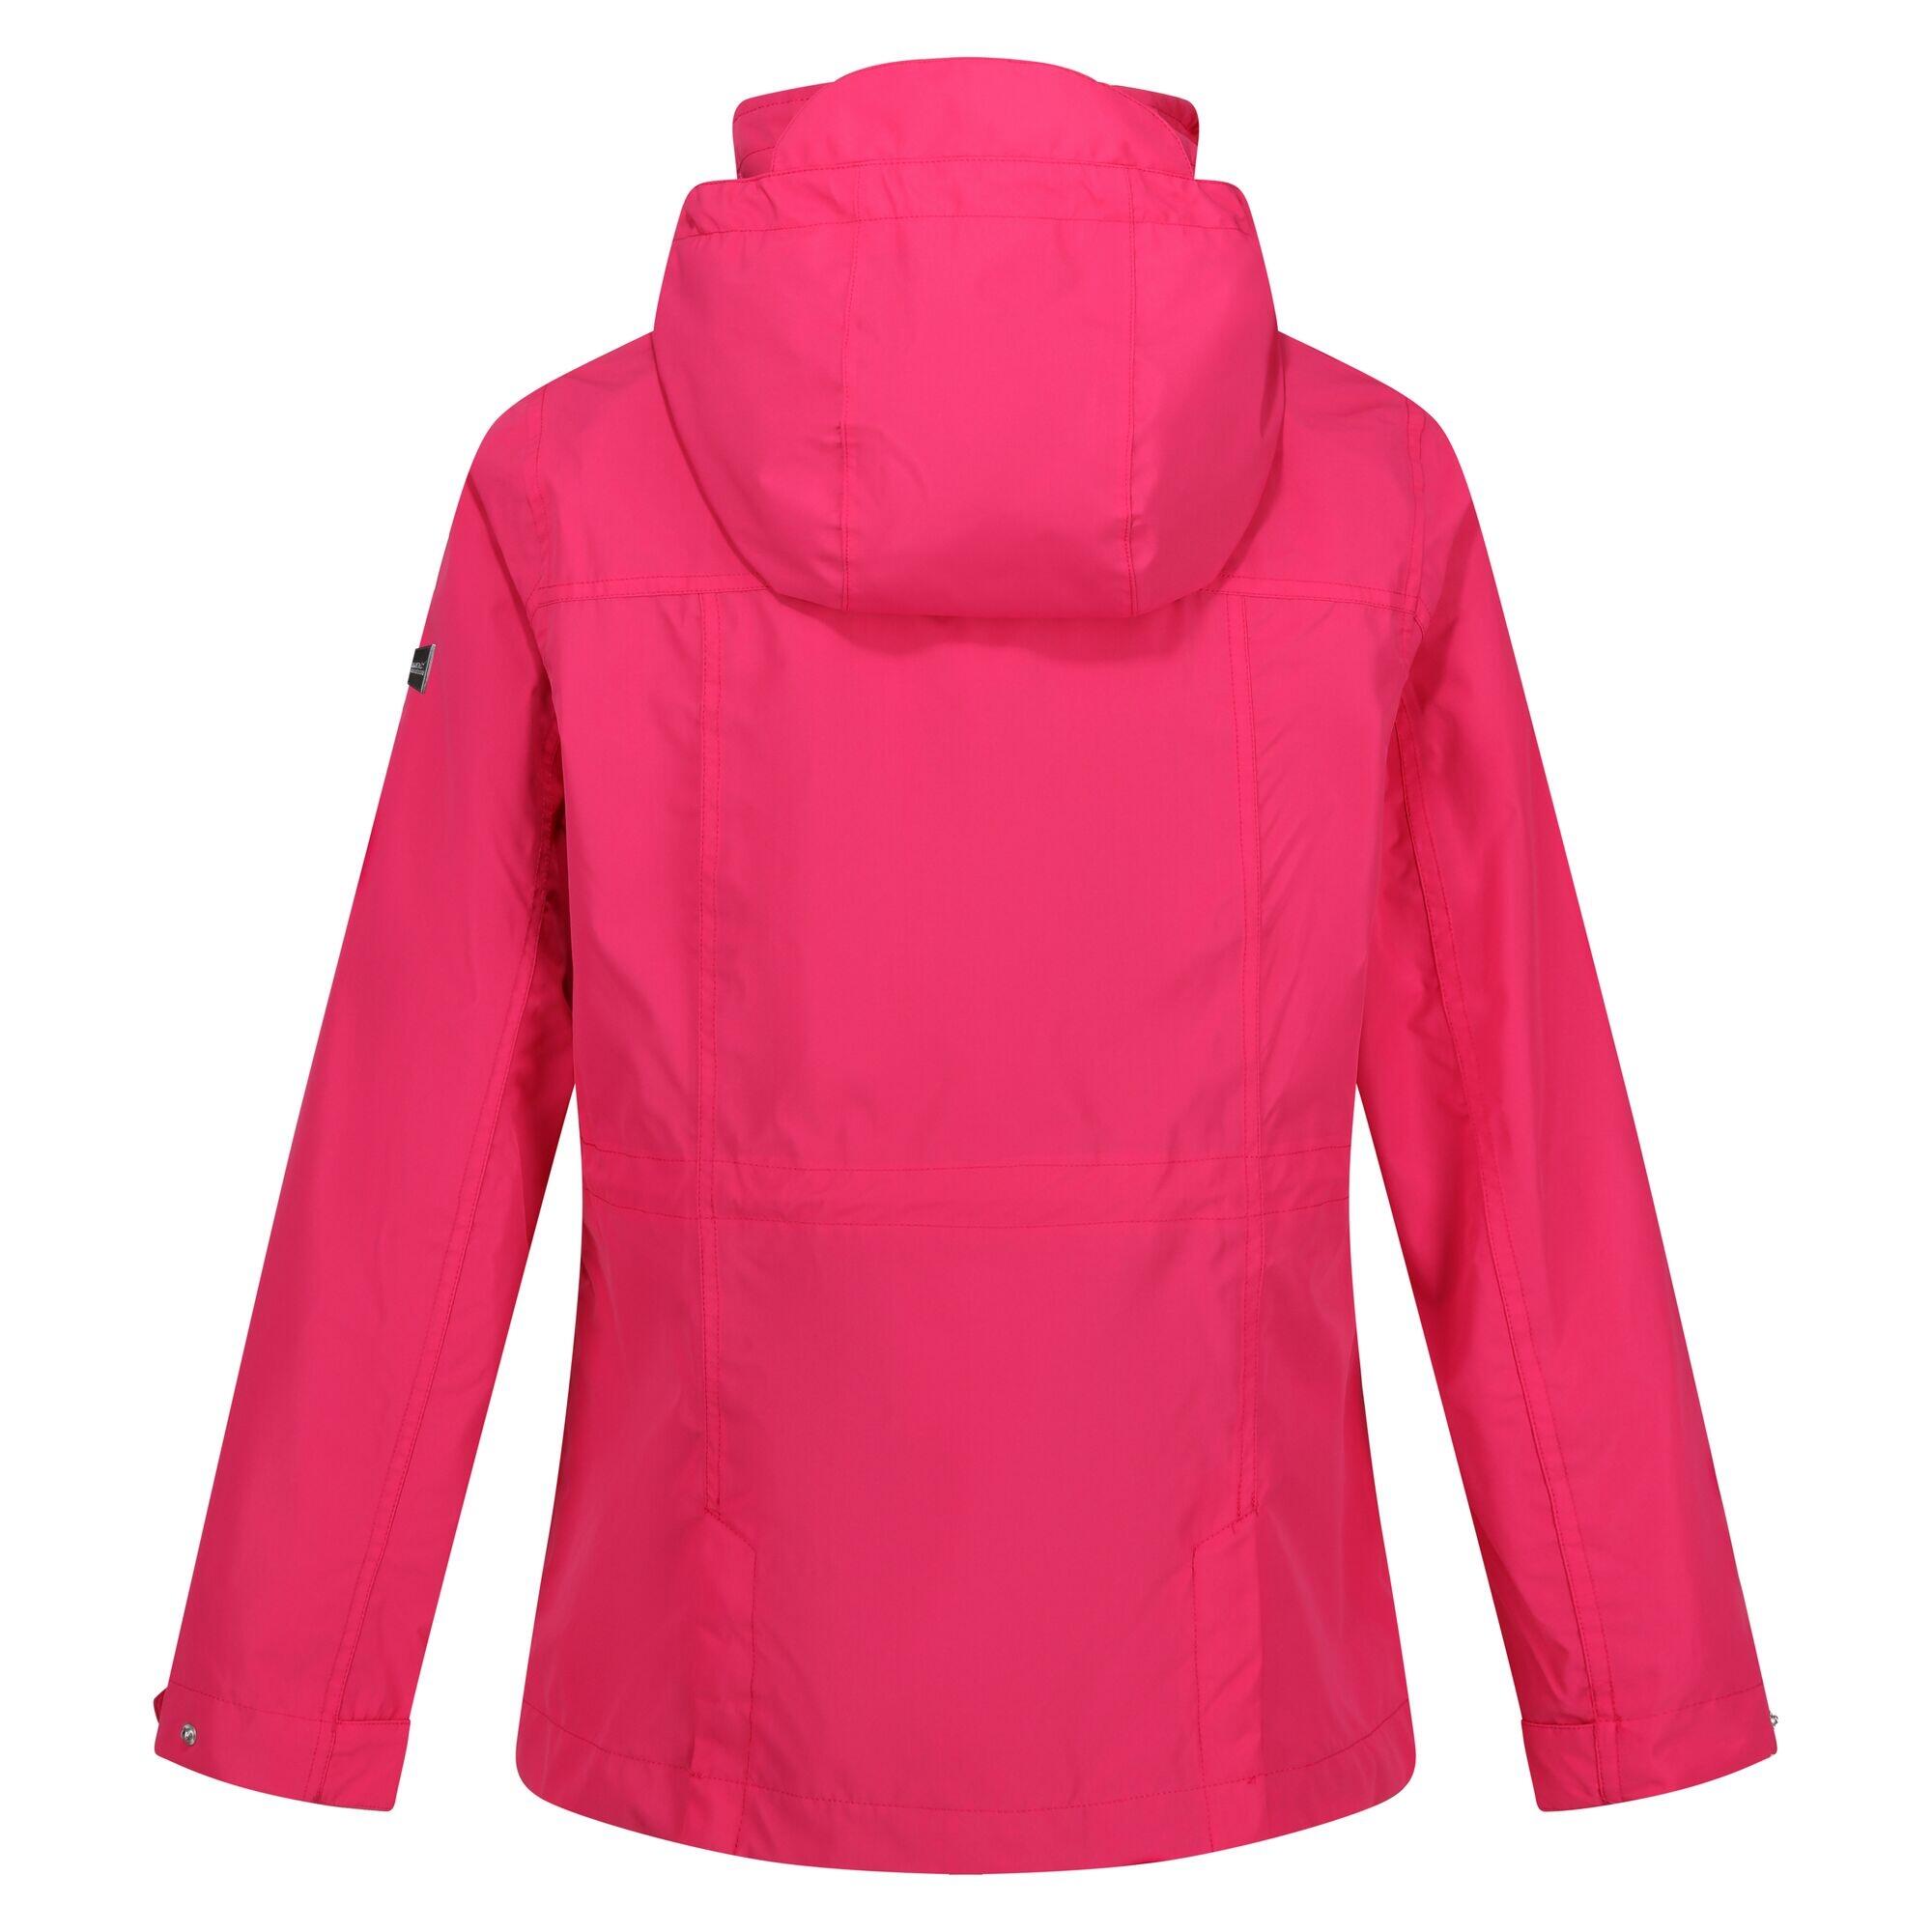 Womens/Ladies Navassa Waterproof Jacket (Hot Pink) 2/5